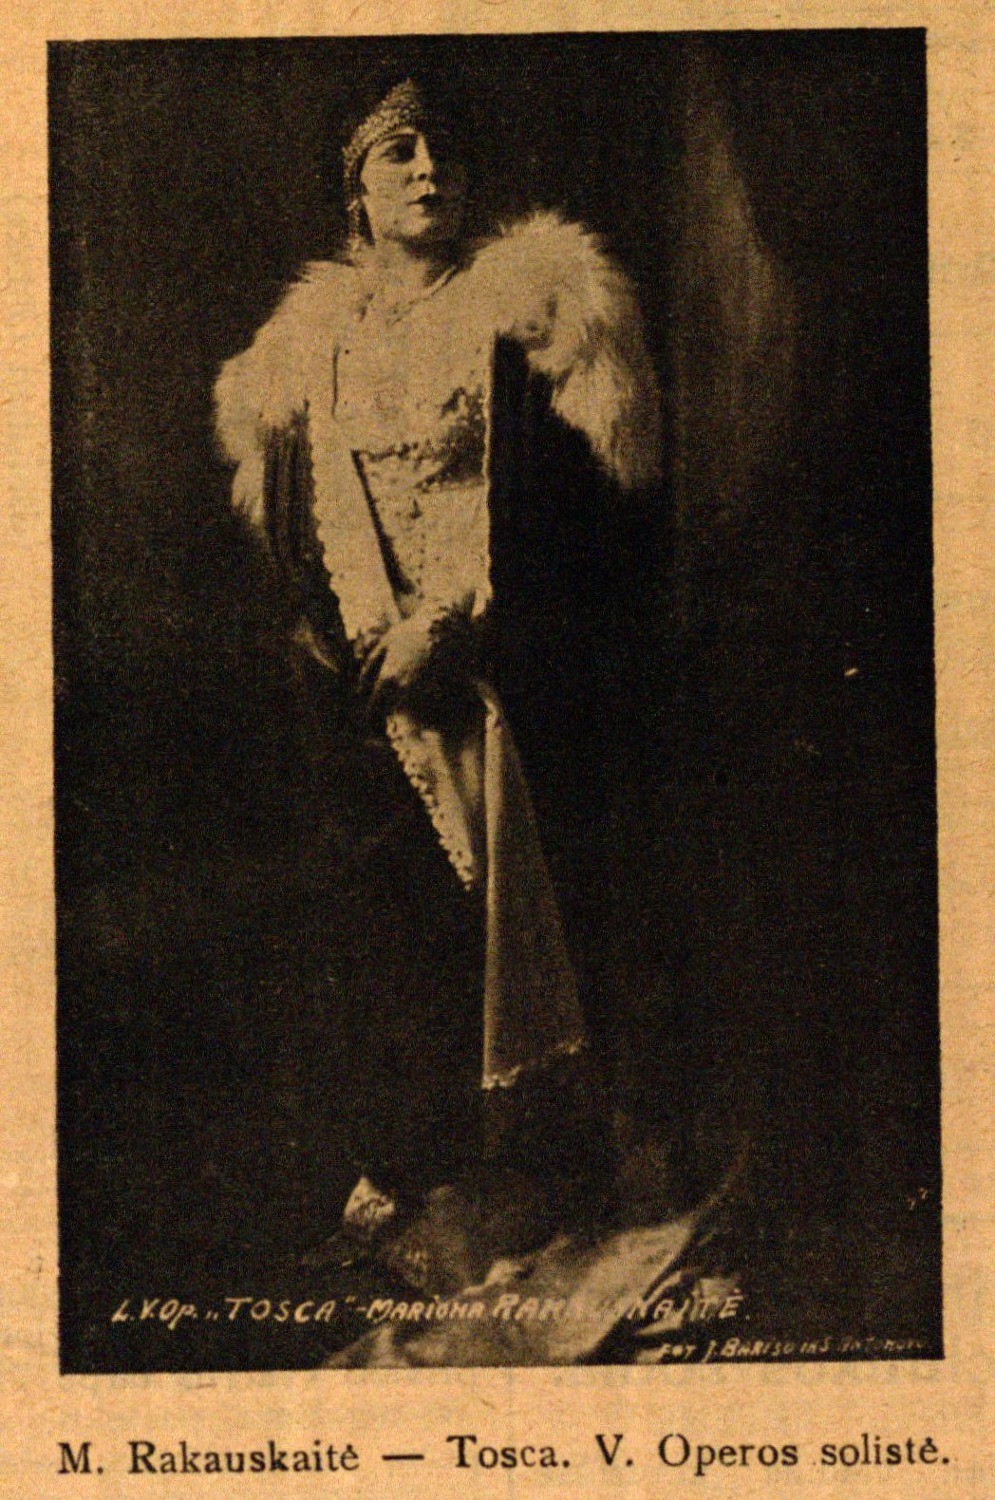 M. Rakauskaitė – Tosca. V. Operos solistė: Foto J. Barisos ir S. Antonovo // 7 meno dienos. – 1927, Nr. 9, p. 3.